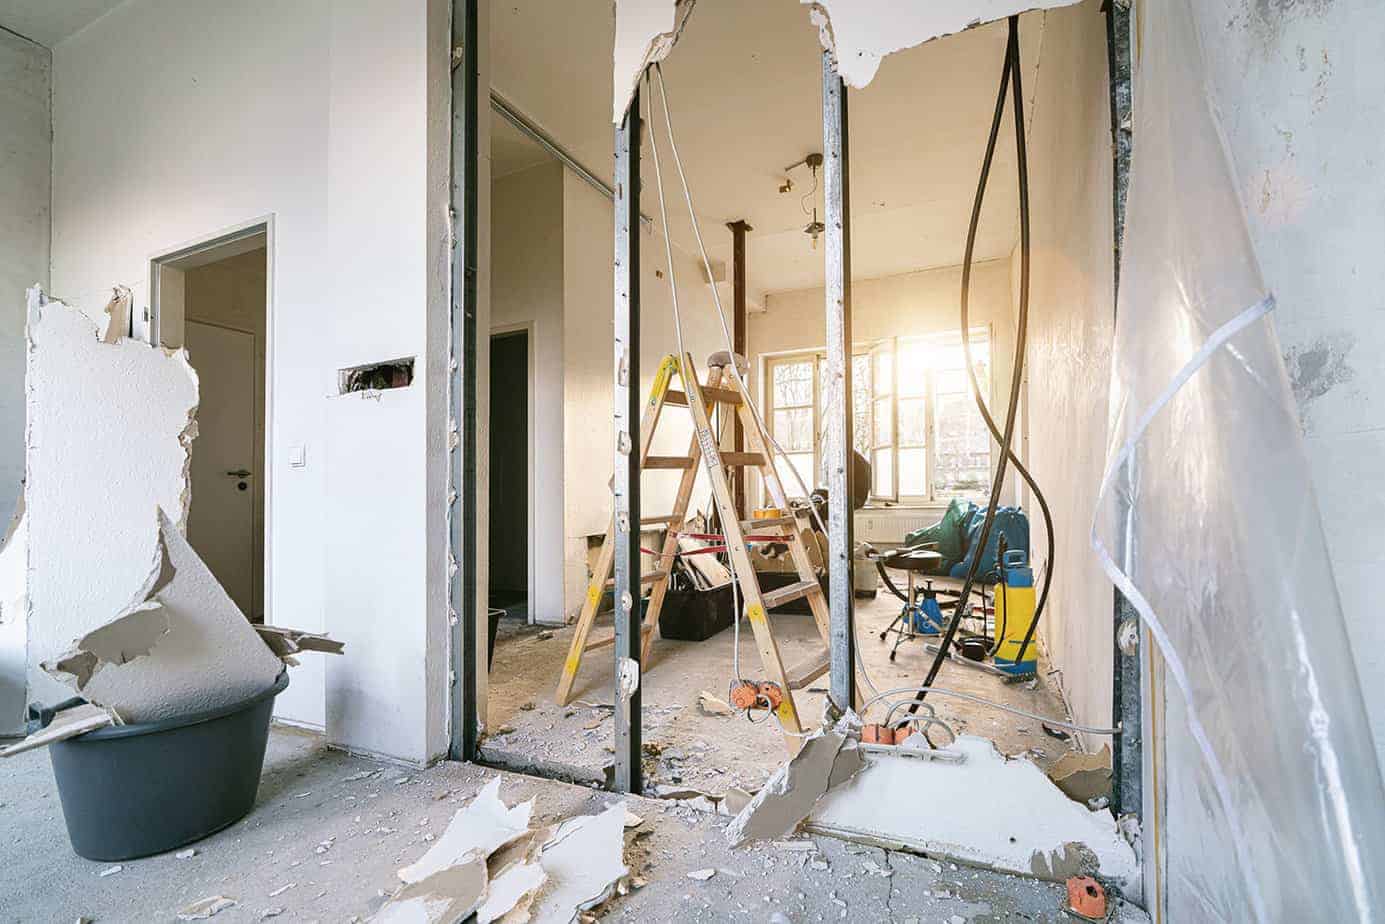 Lexington Bathroom Demolition Contractor | Knockdown Services